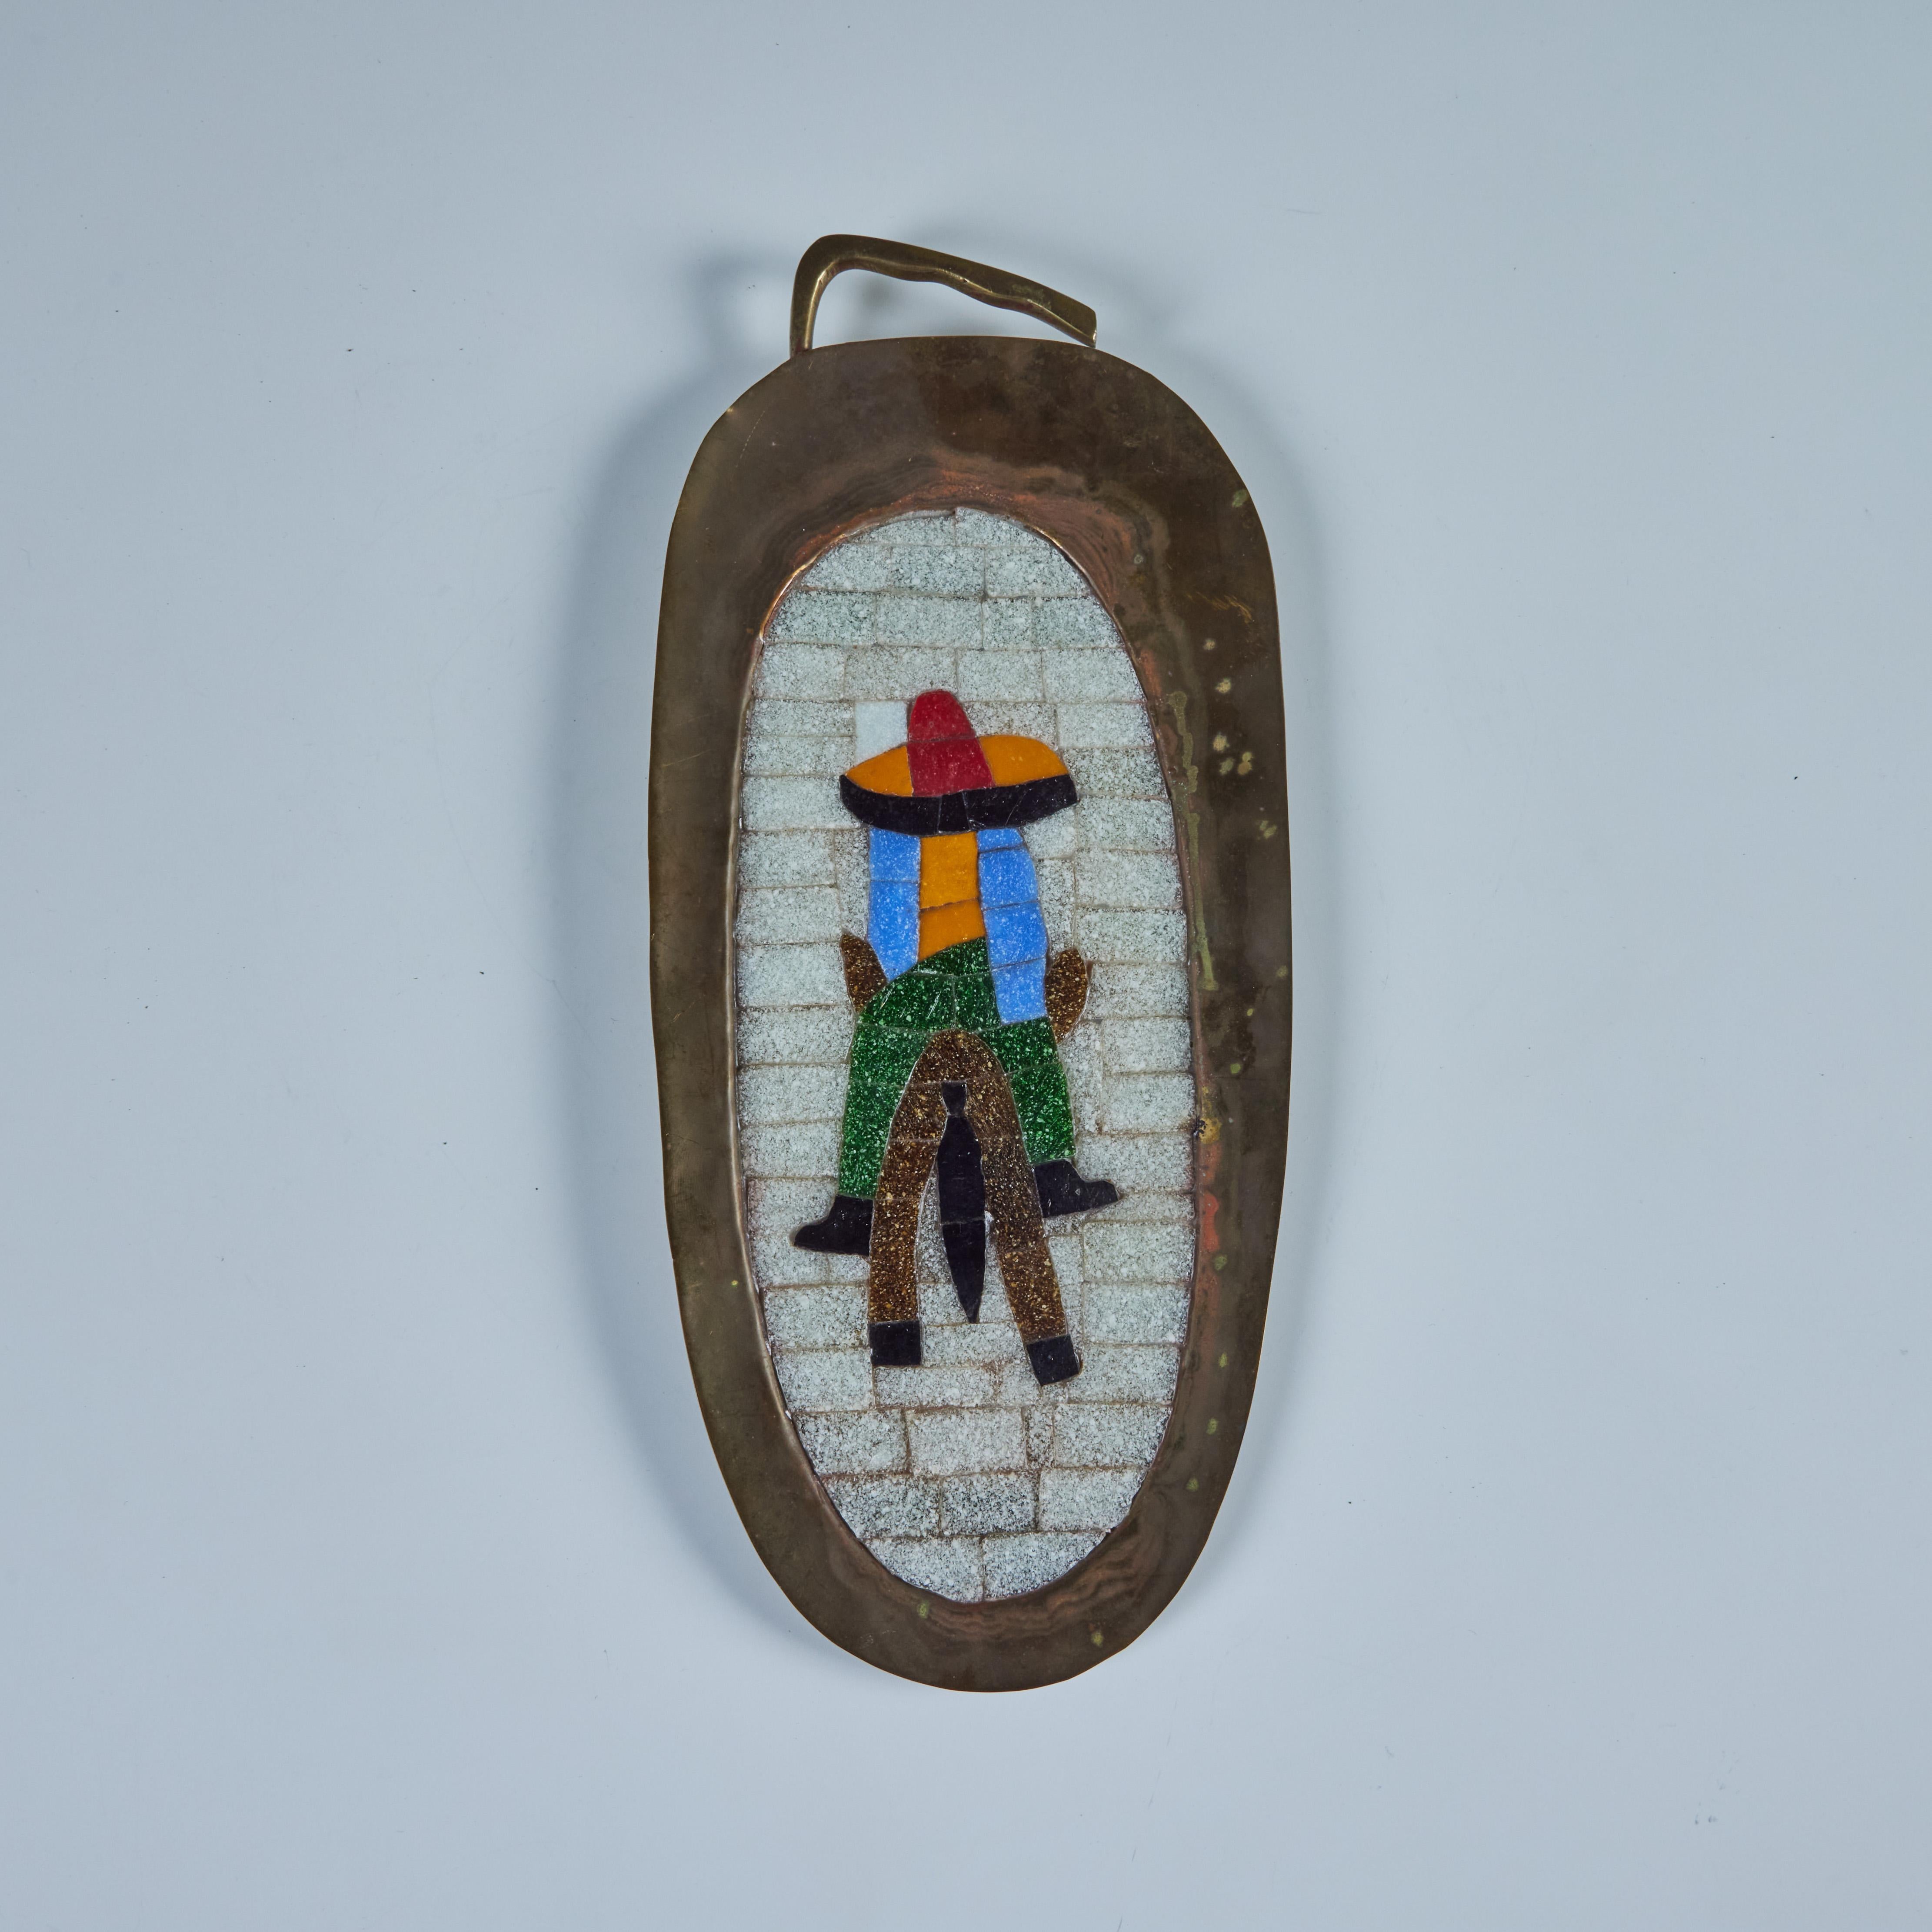 Suspension murale ovale en laiton forgé à la main dans le style de Salvador Teran, C.I.C. Mexique. Le plateau est orné d'une mosaïque de carreaux représentant un homme coiffé d'un sombrero et chevauchant un âne.

Dimensions
15